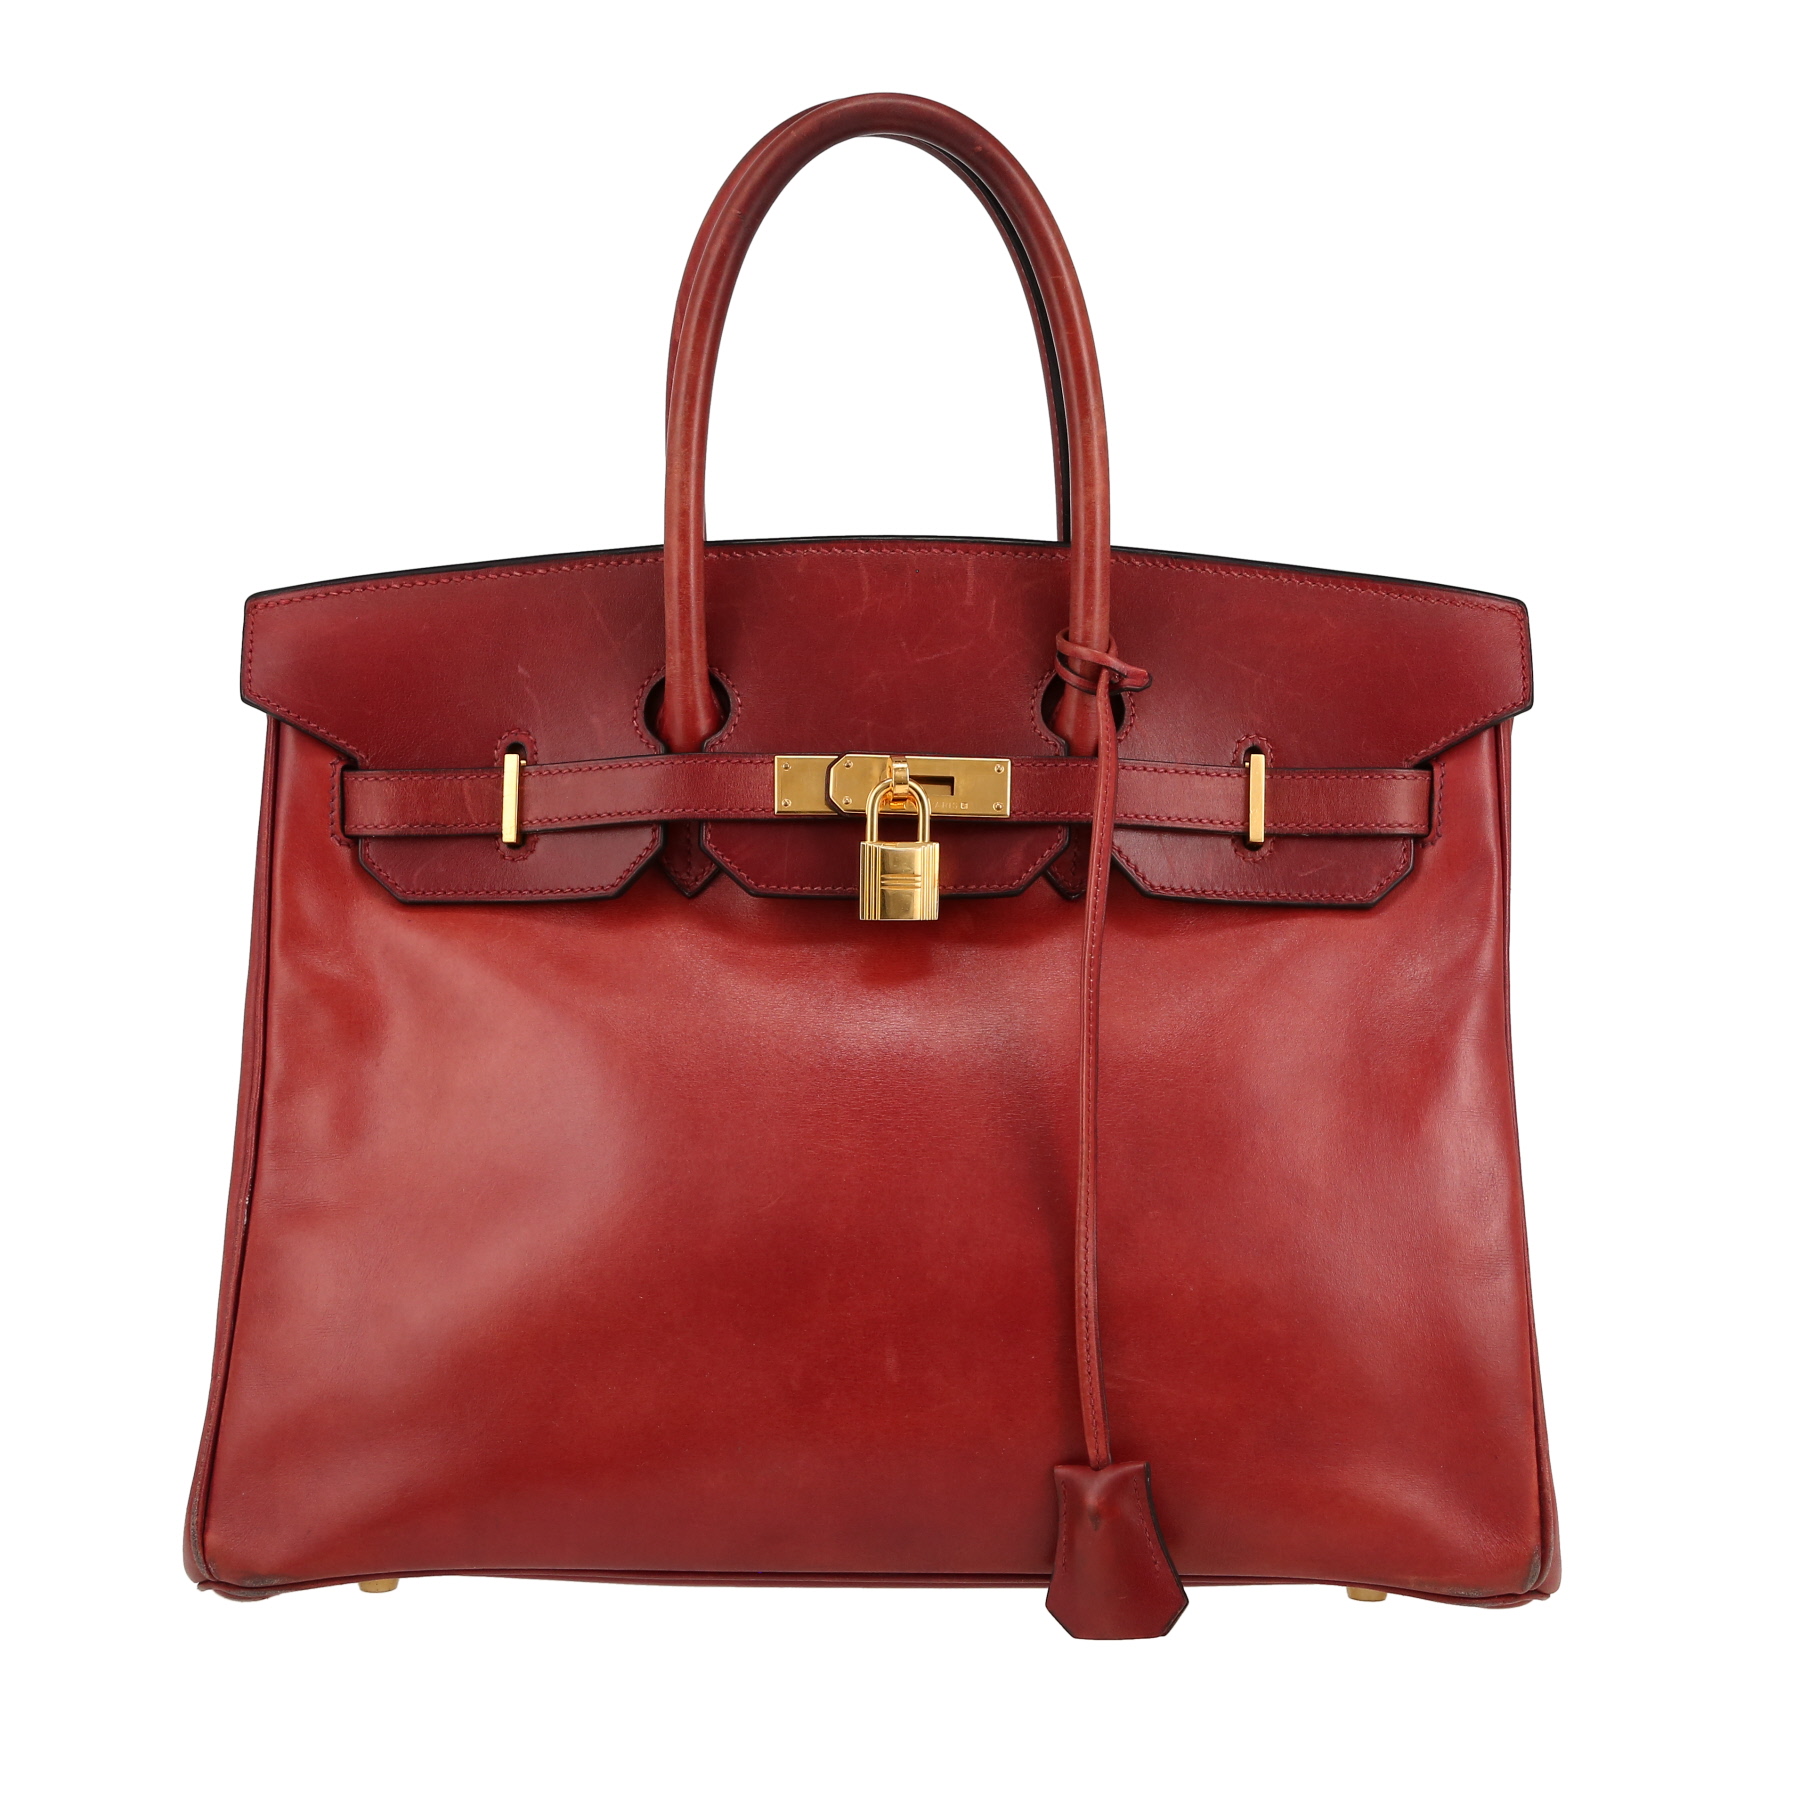 Birkin 35 cm Handbag In Box Leather